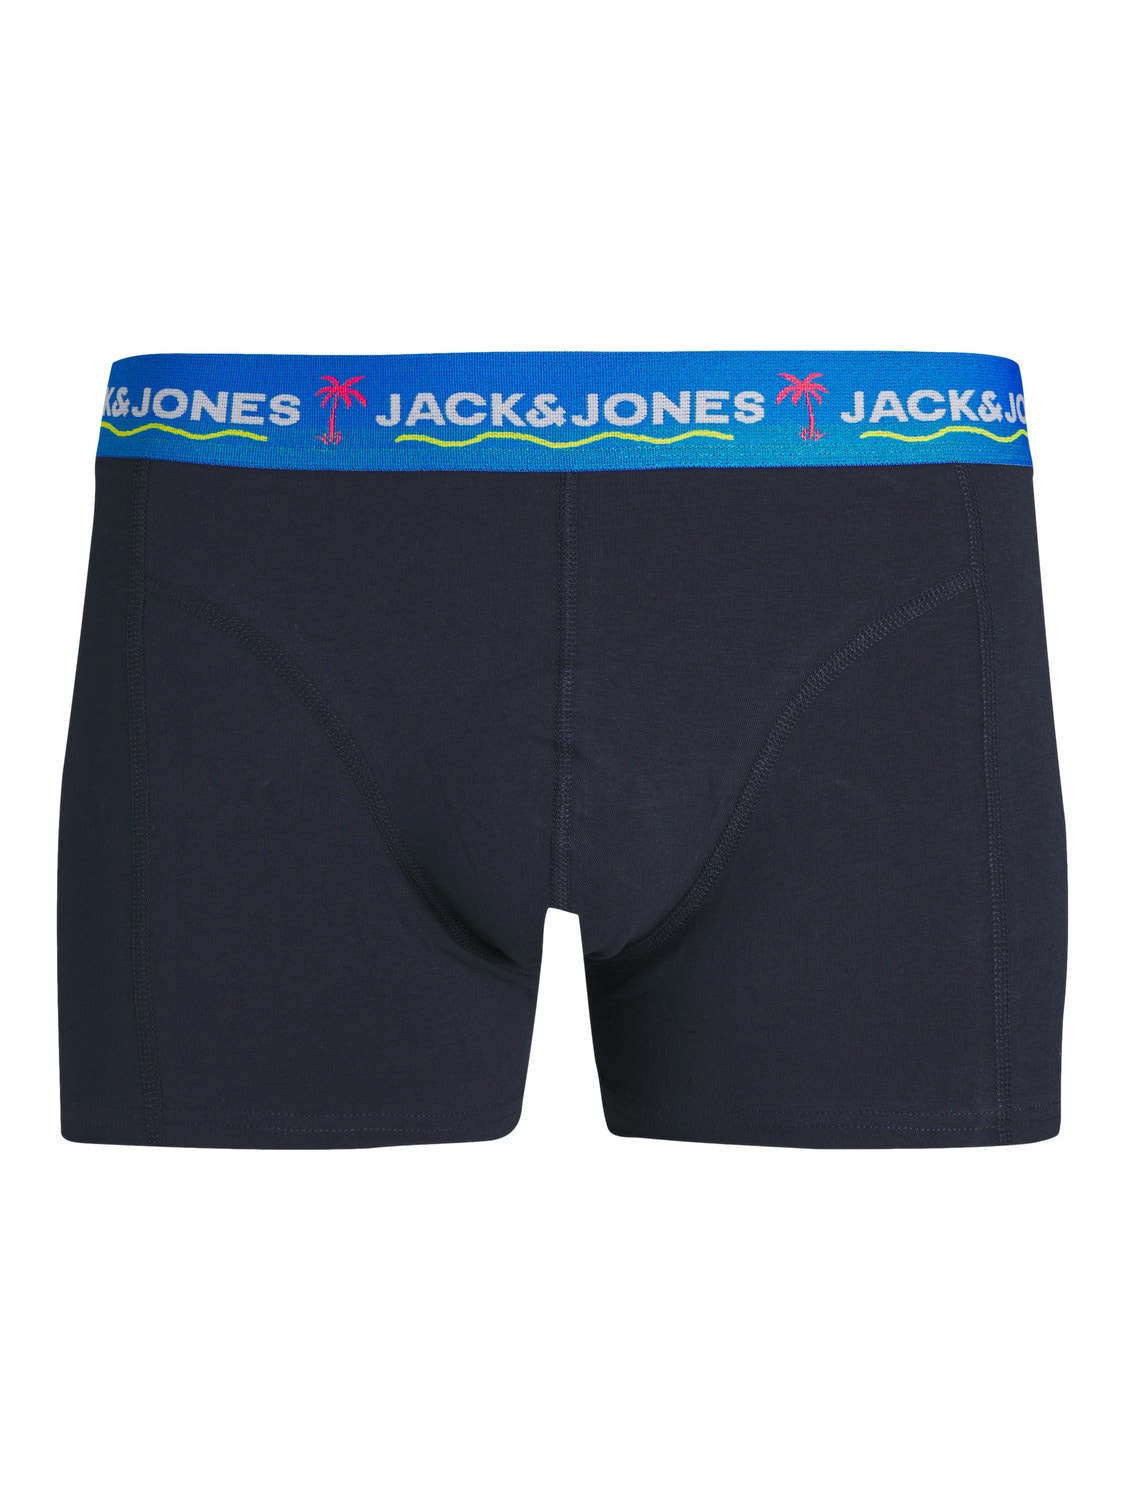 Jack & Jones Paquete de 3 Calções de banho -Navy Blazer - 12250609